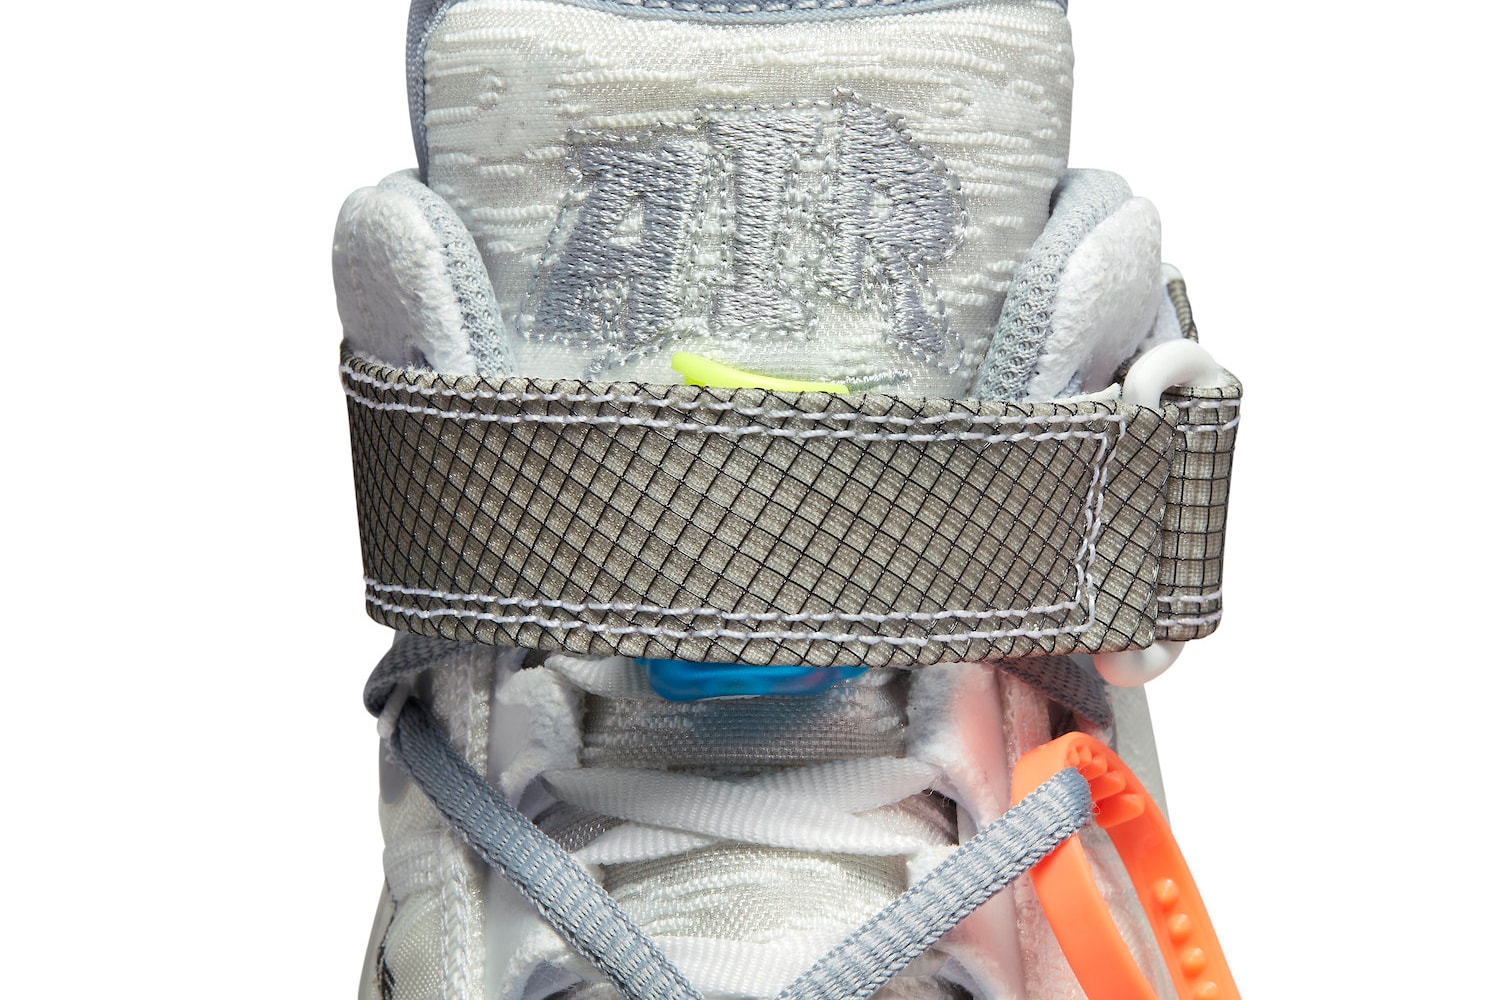 率先近賞 Off-White™ x Nike Air Force 1 Mid「White」聯乘鞋款官方圖輯